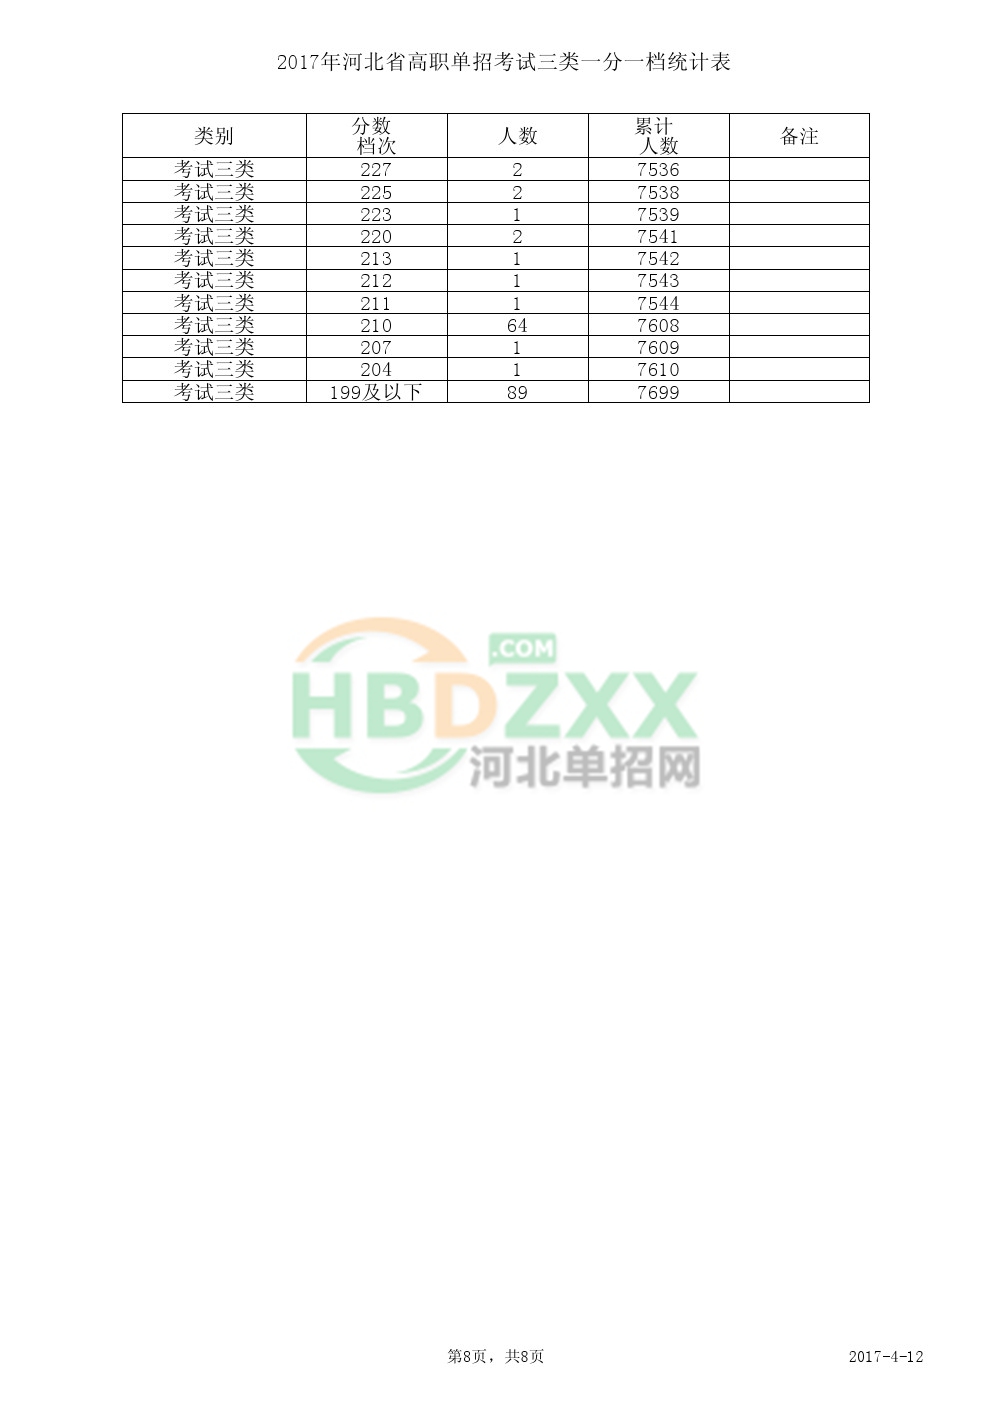 2017年河北省高职单招考试三类一分一档统计表